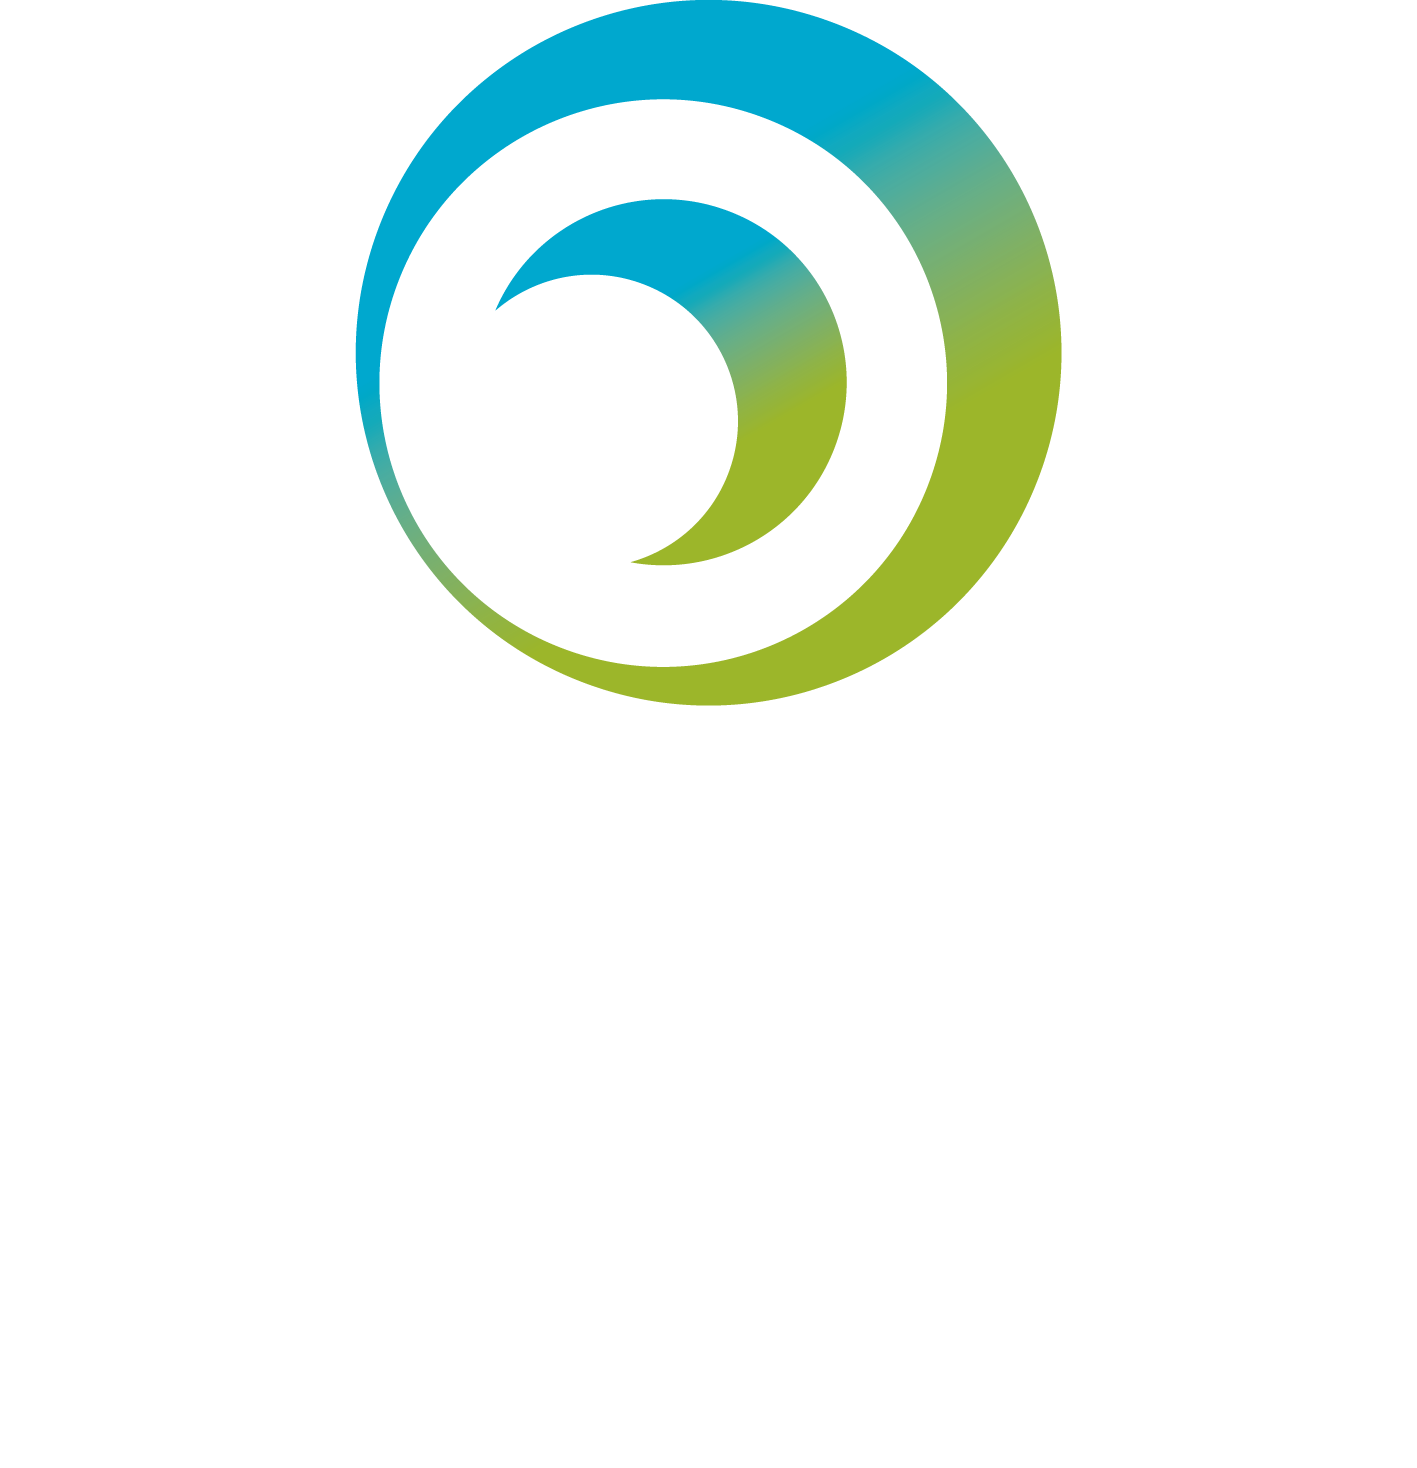 Blink, Bridge of Allan